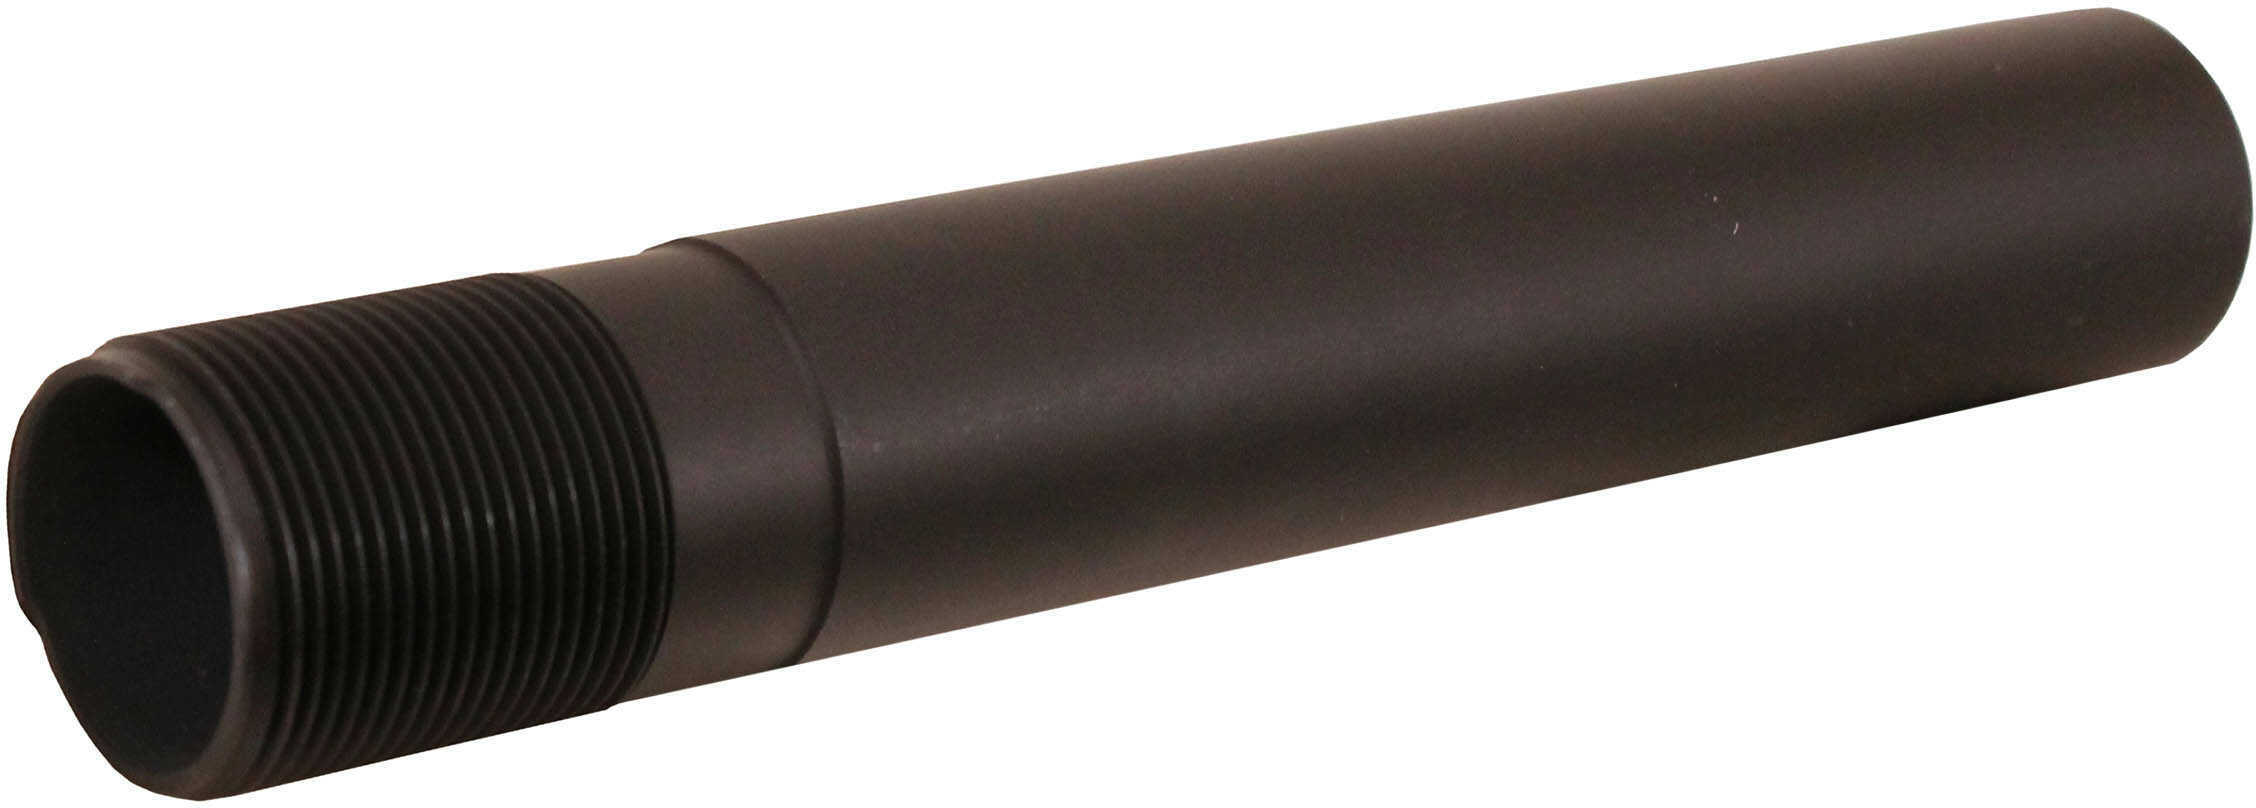 UTG Pro AR Pistol Extended Receiver Extension Tube Black